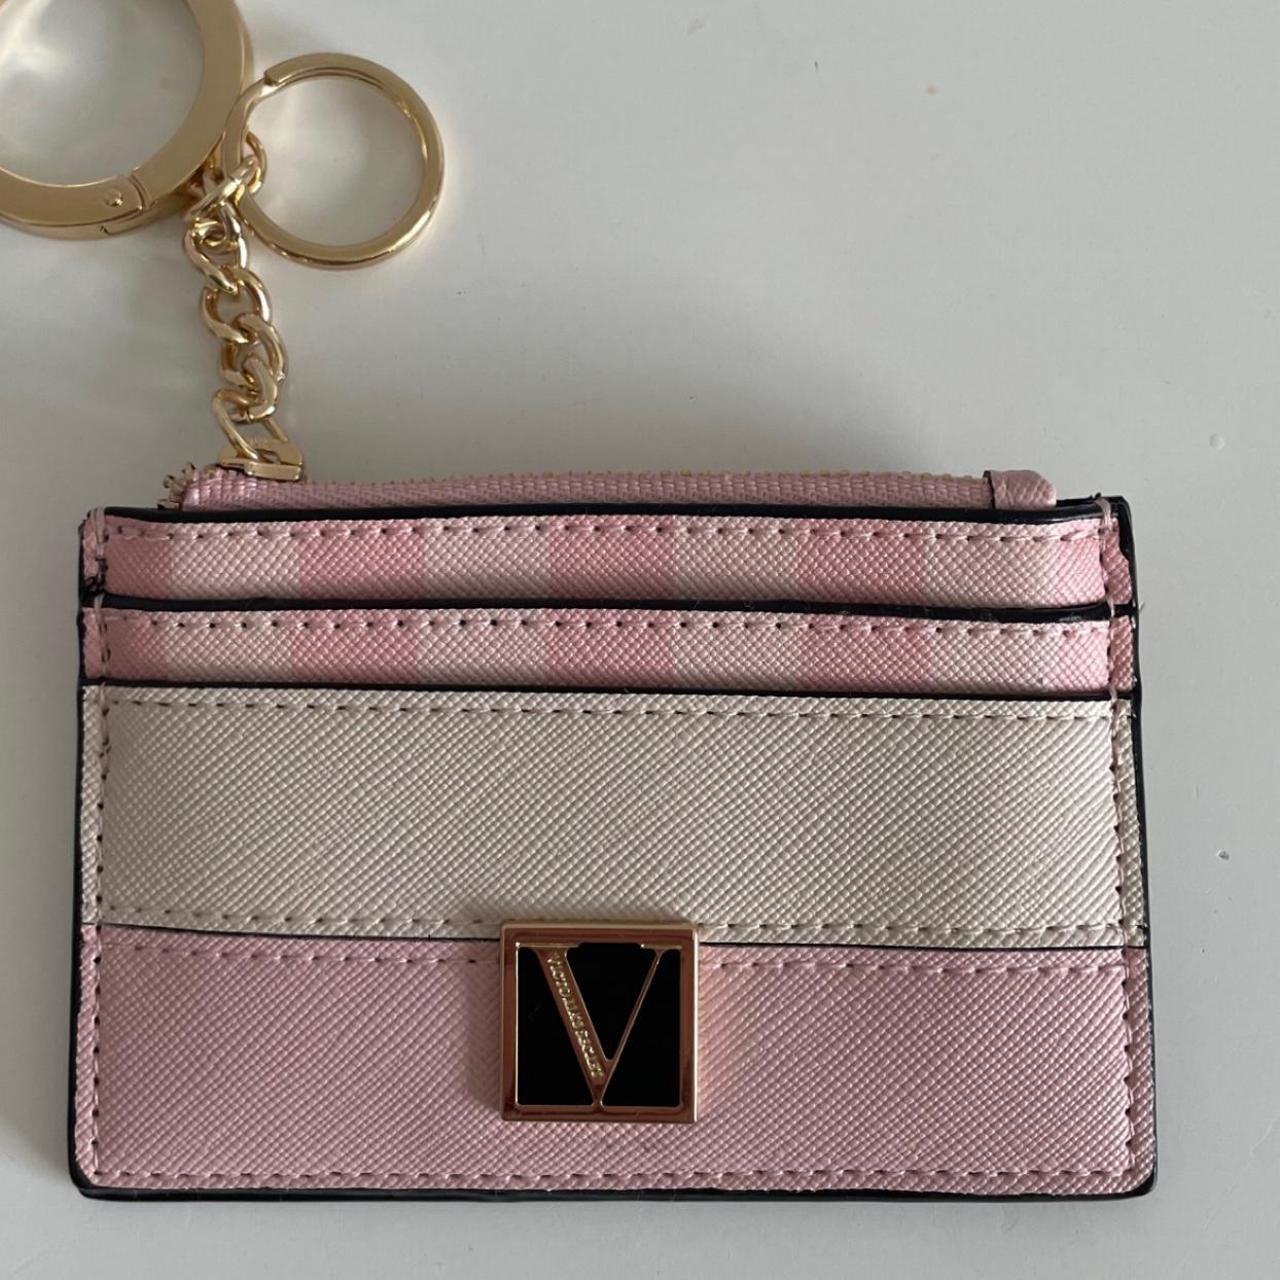 Victoria's Secret Women's Wallet-purses